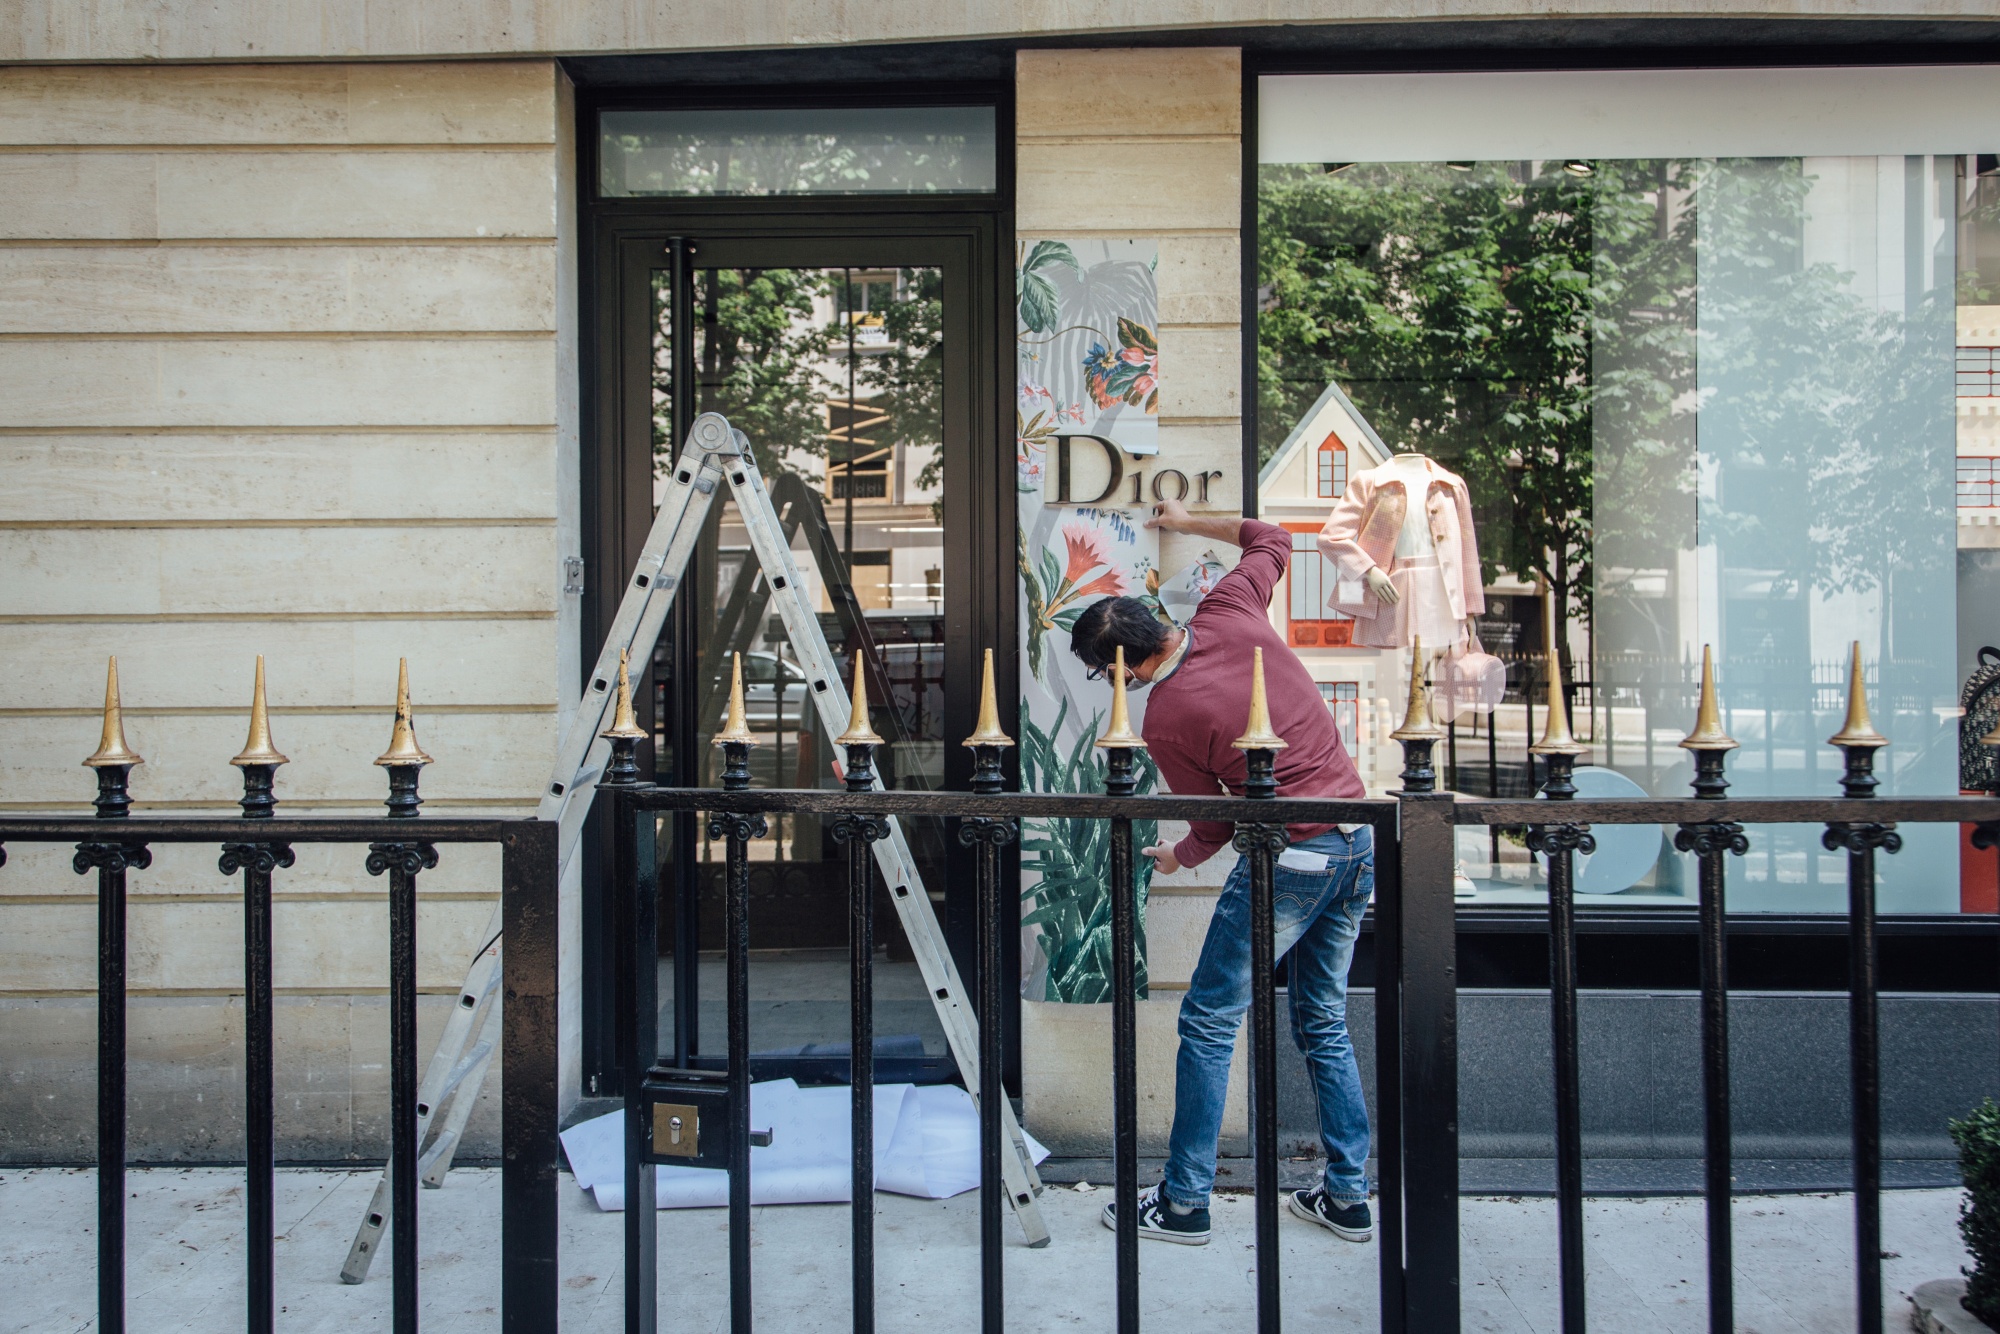 Salvatore Ferragamo reopens flagship store in Avenue Montaigne, Paris